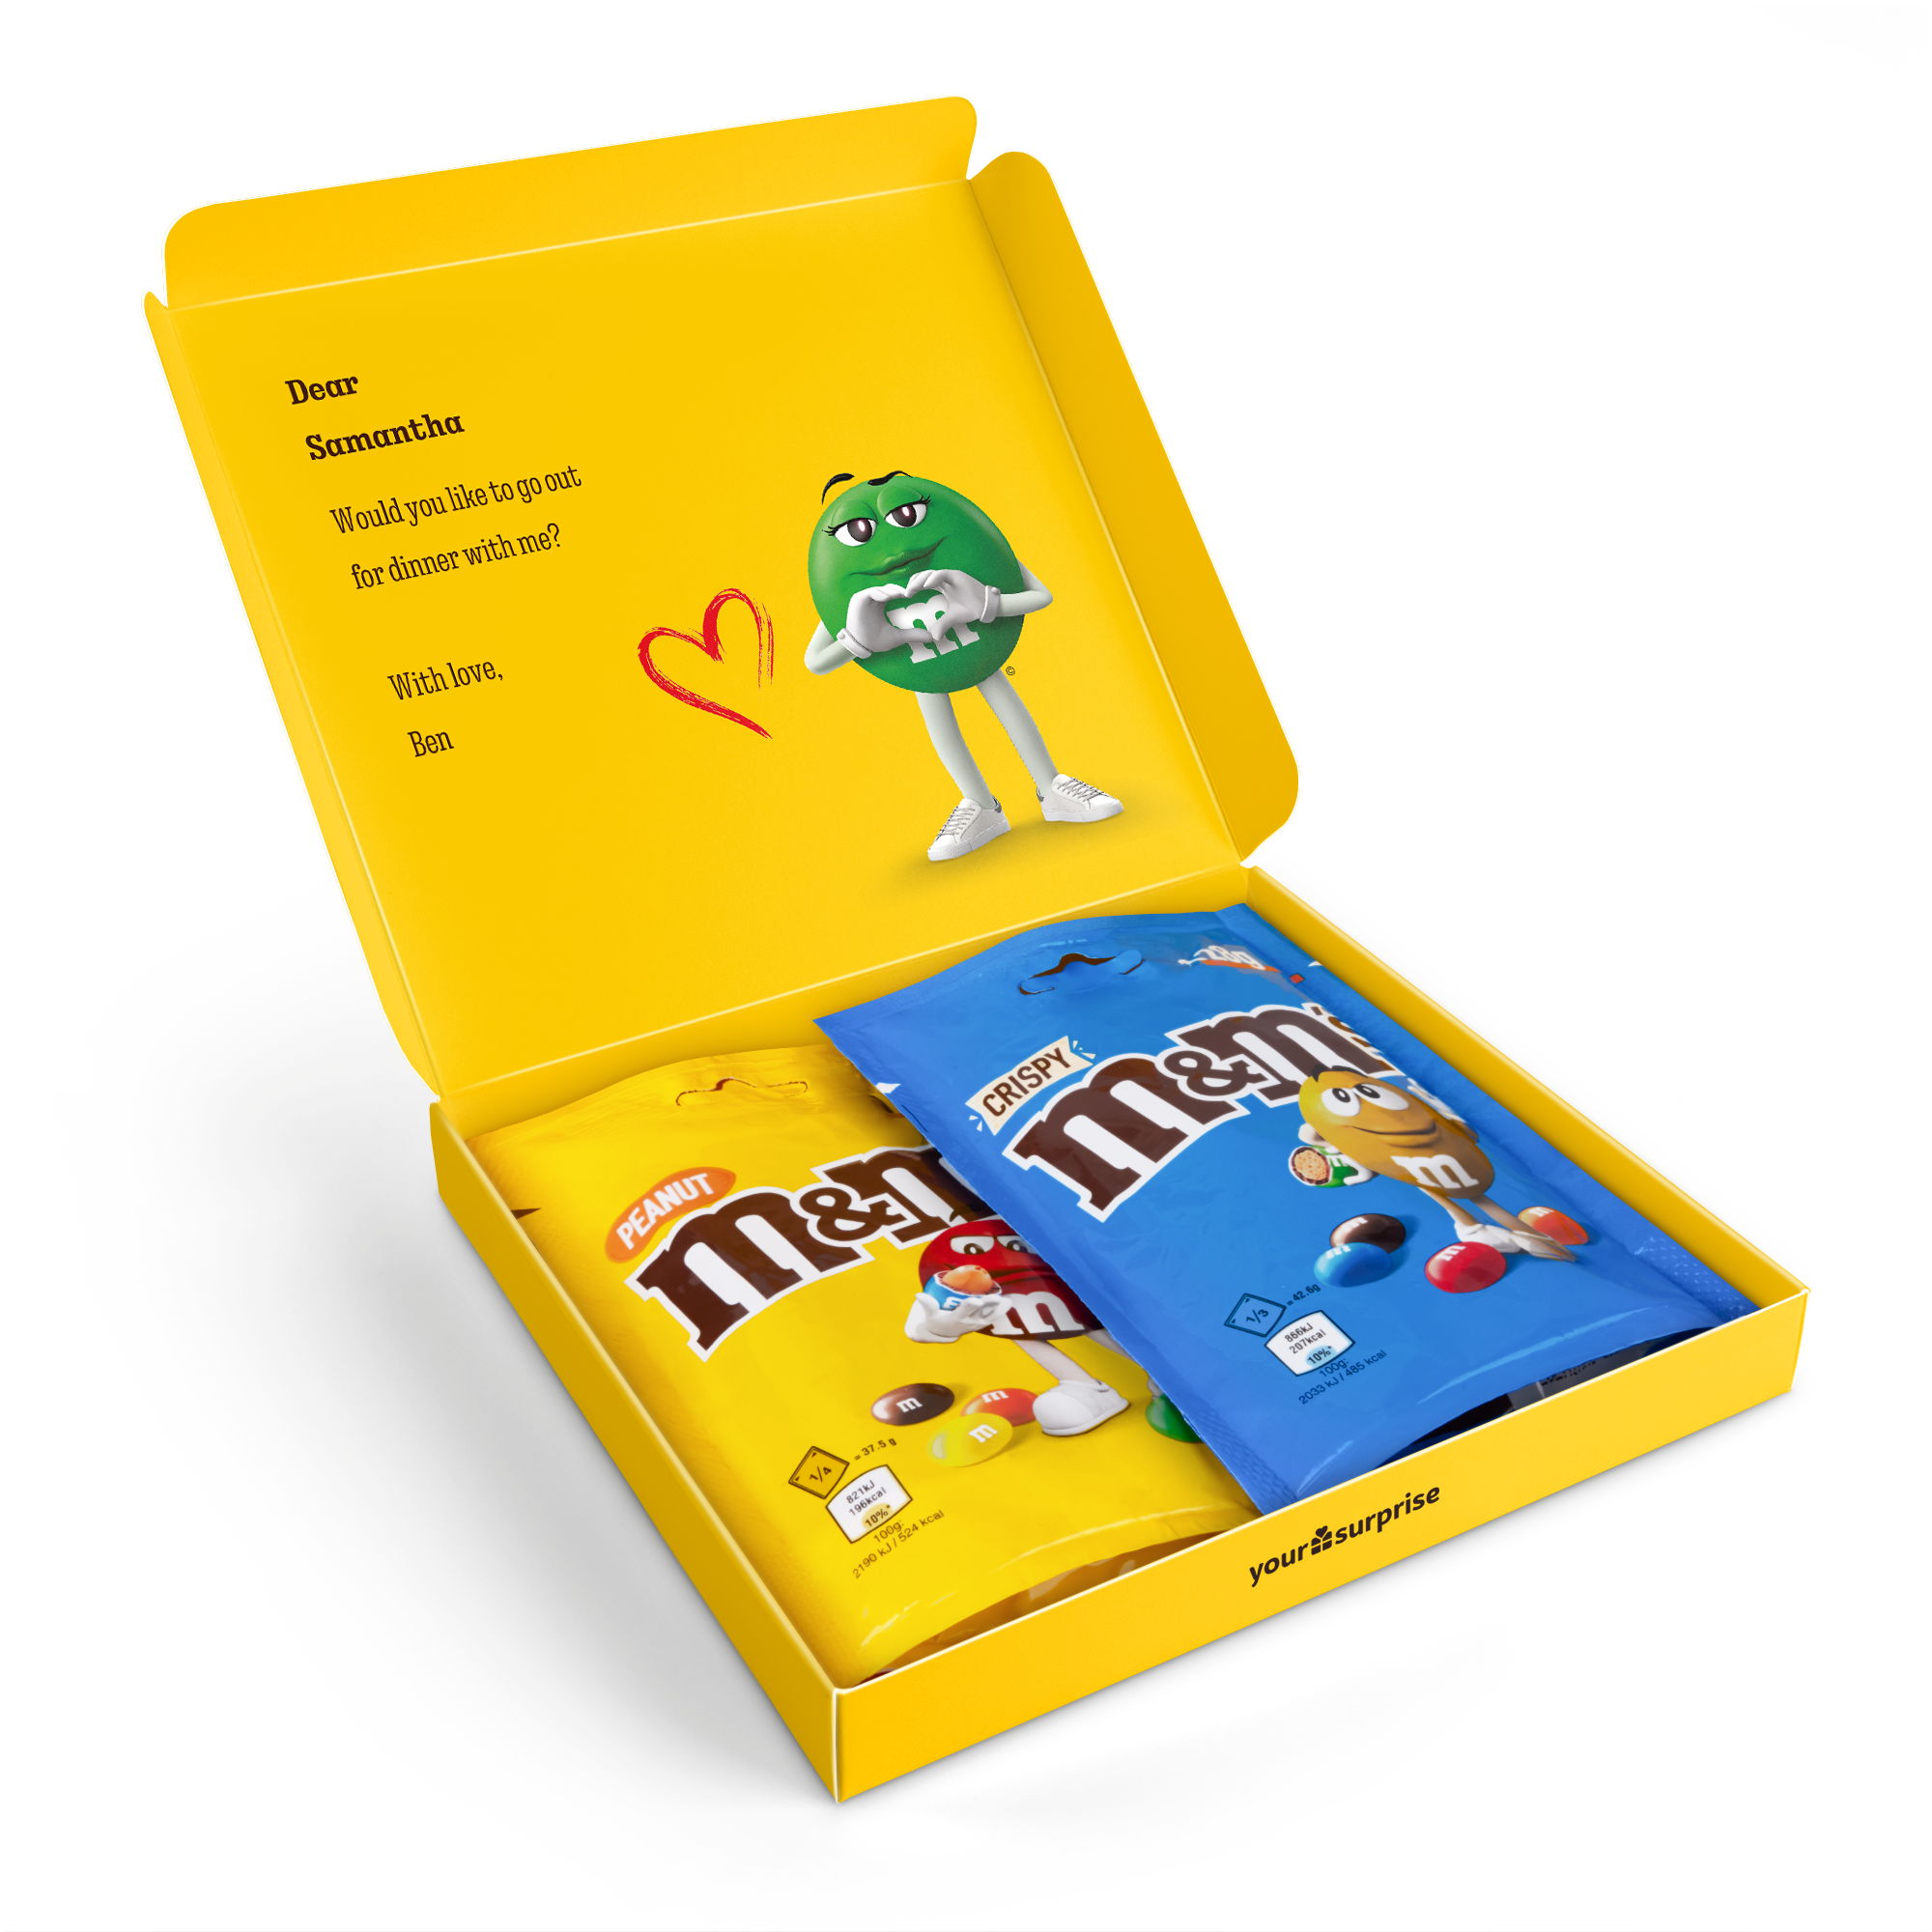 Gepersonaliseerde giftbox met M&M's chocolade